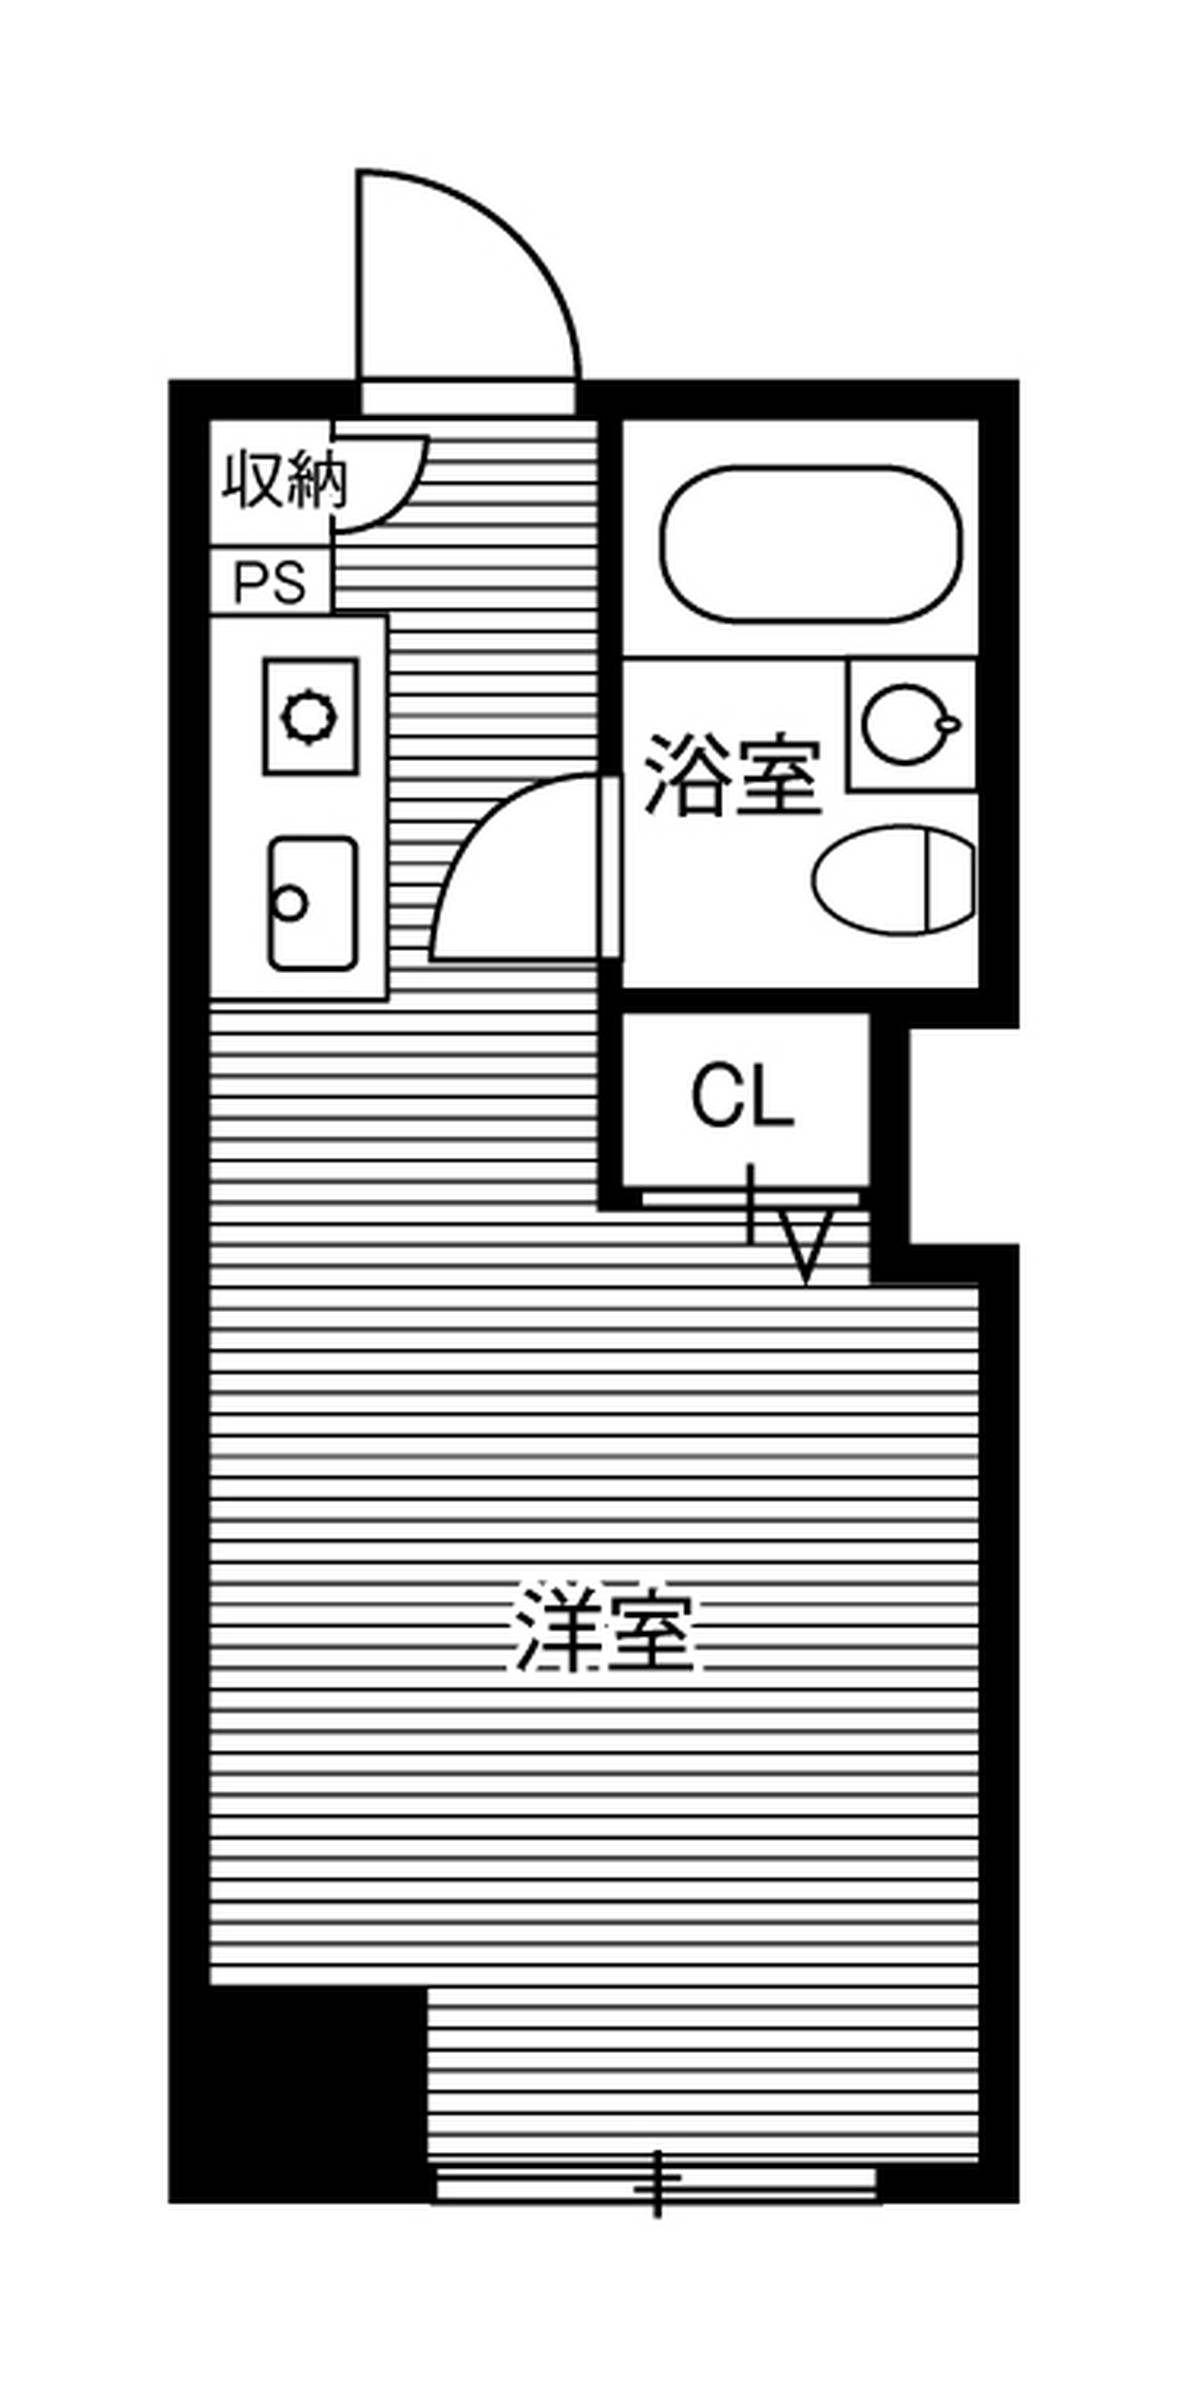 1R floorplan of Village House Narita Tamatsukuri in Narita-shi